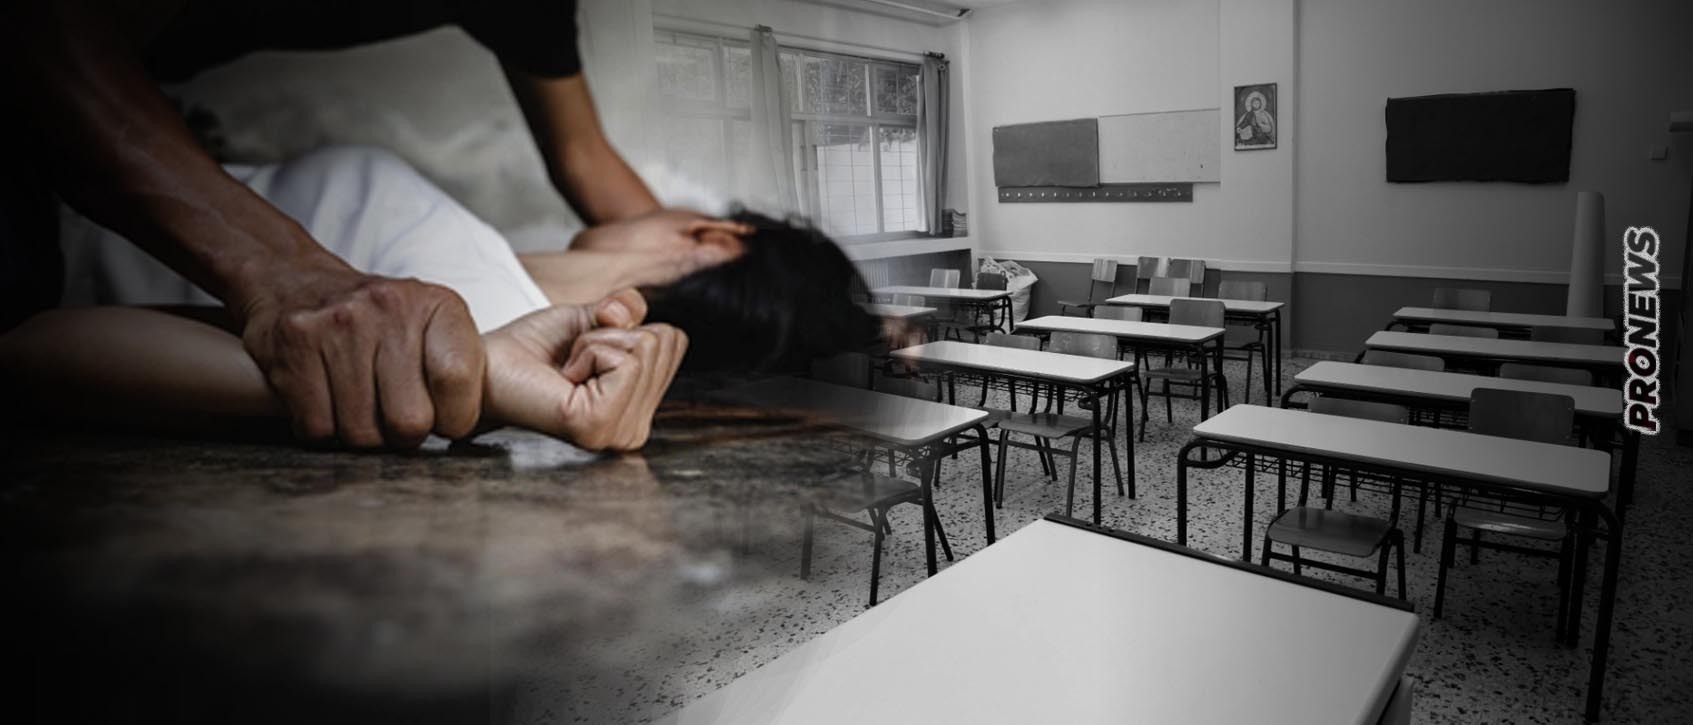 Αλλοδαποί εισέβαλαν σε Γυμνάσιο στην Κυψέλη για να κακοποιήσουν σεξουαλικά 12χρονη! – Κτύπησαν με ρόπαλο μαθητή (upd)